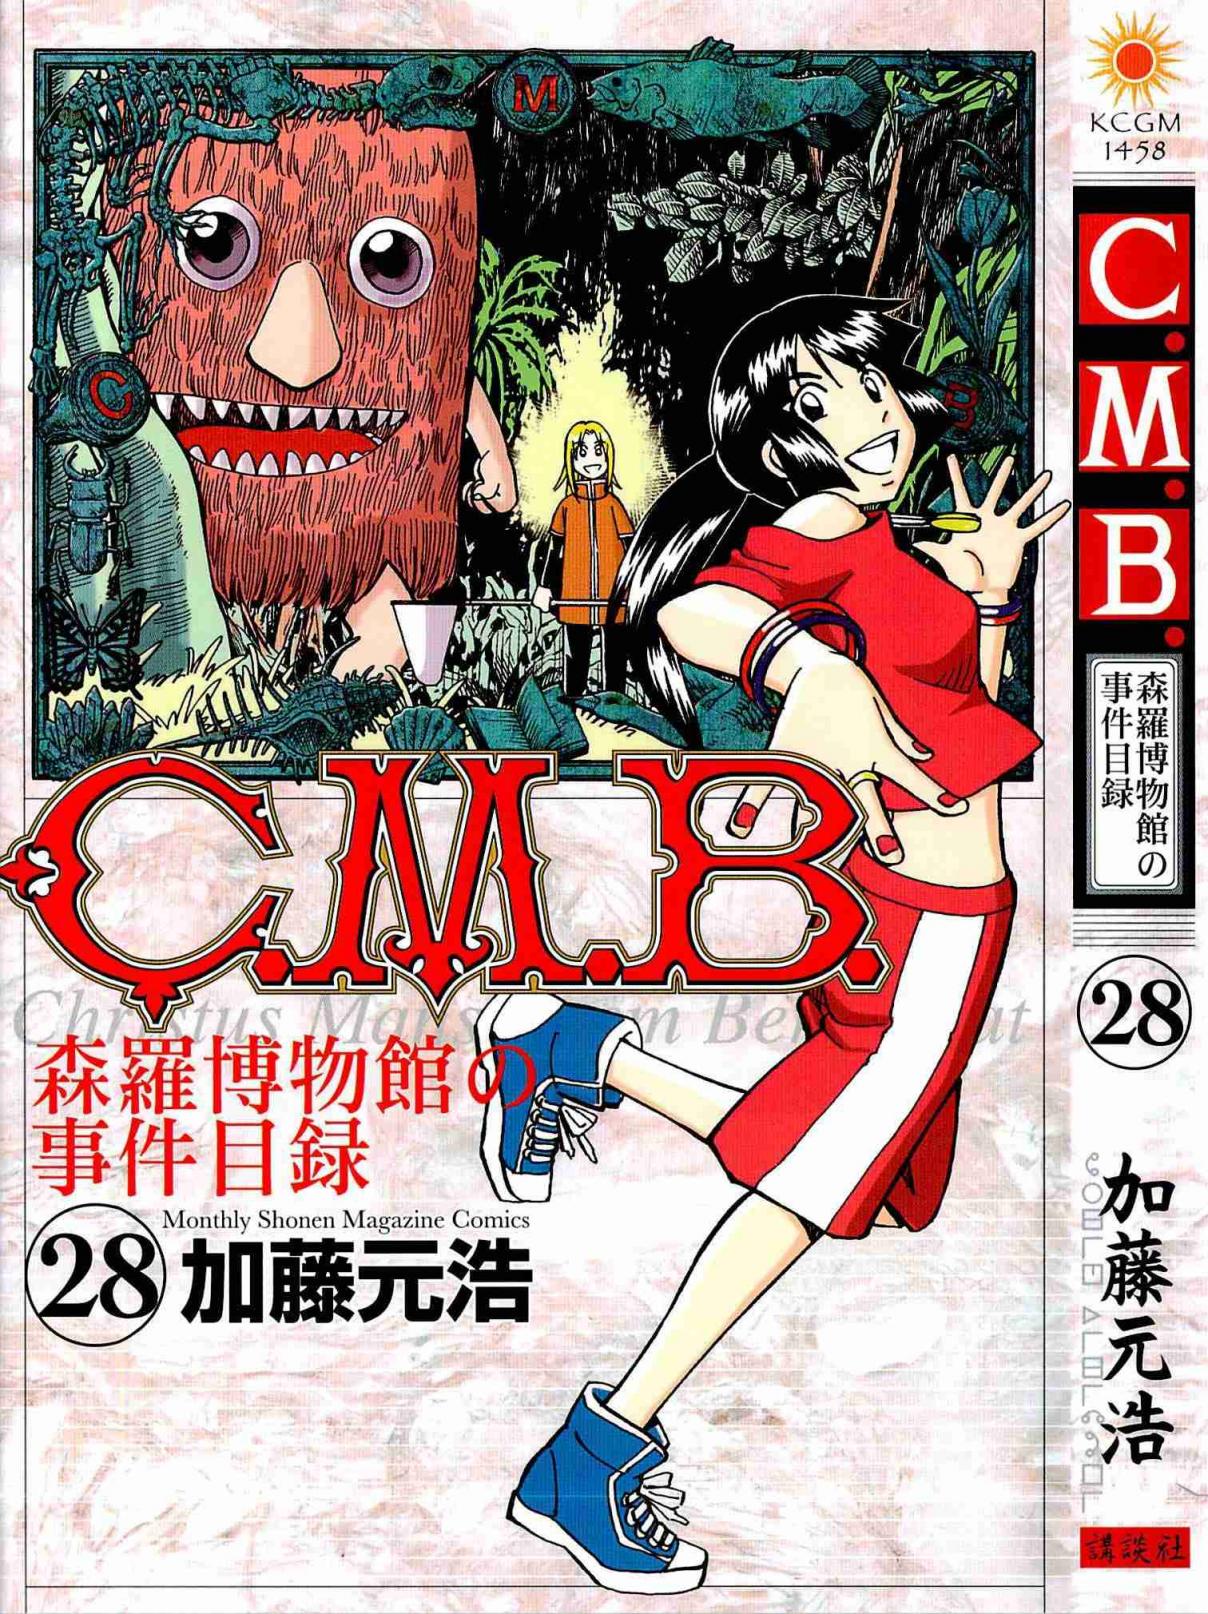 C.M.B. Vol. 28 Ch. 87 Kijimuna